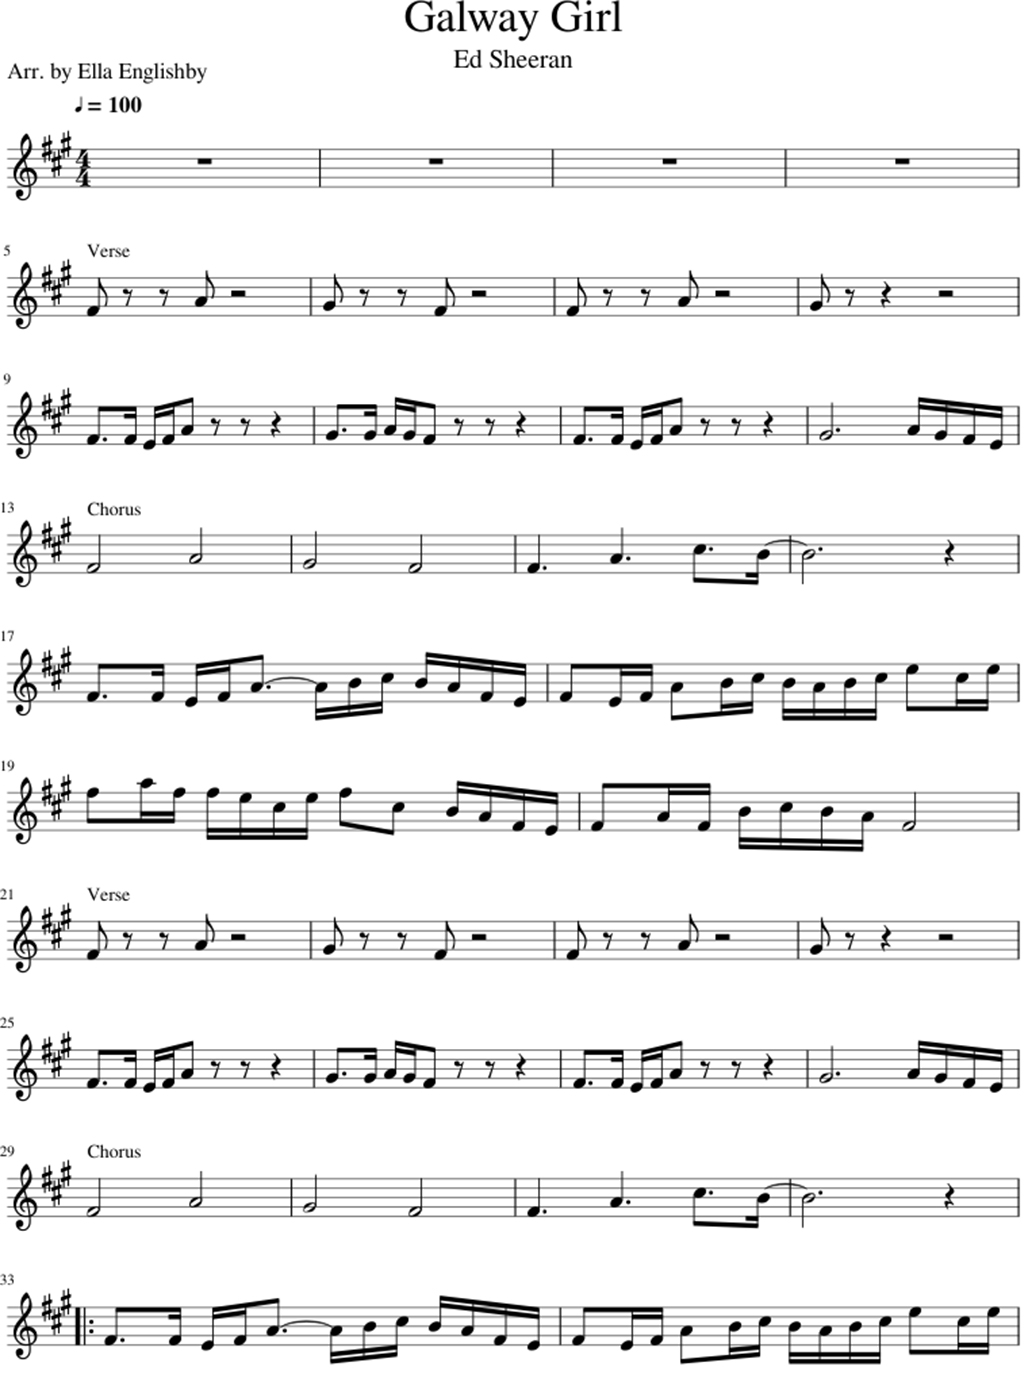 Galway Girl sheet music notes 1